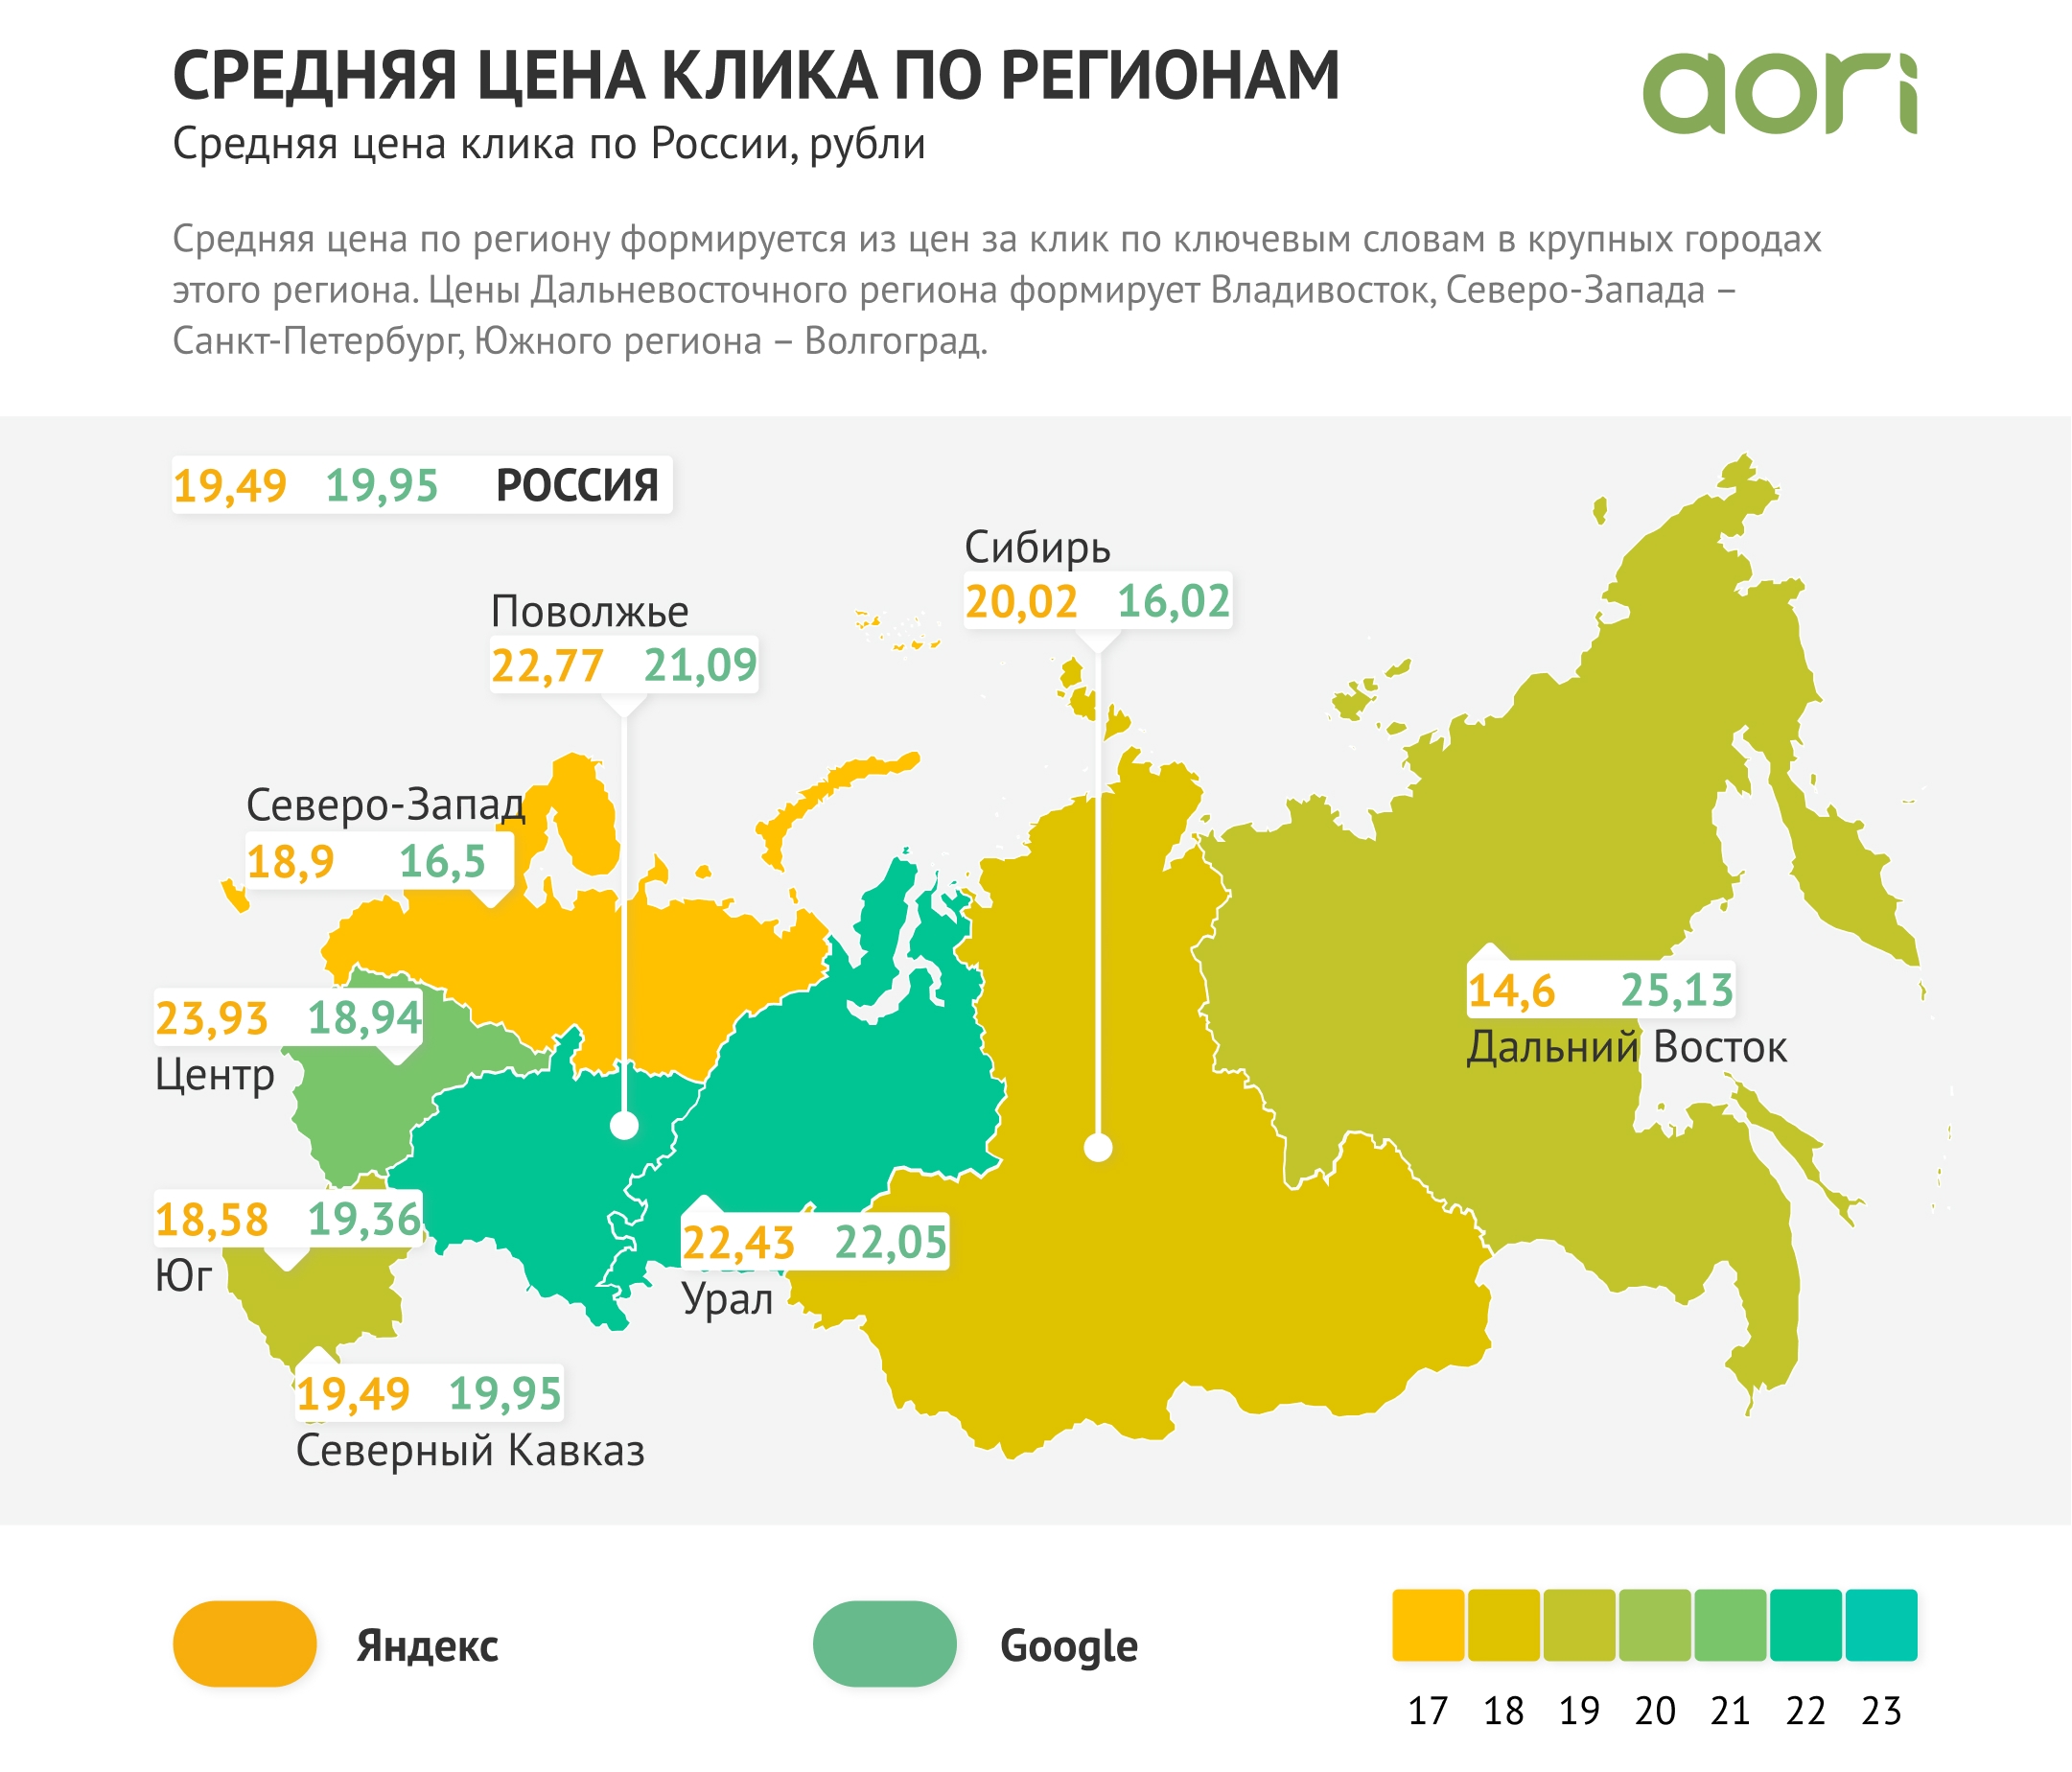 Средняя цена клика с разбивкам по разным регионам России в 2020 году